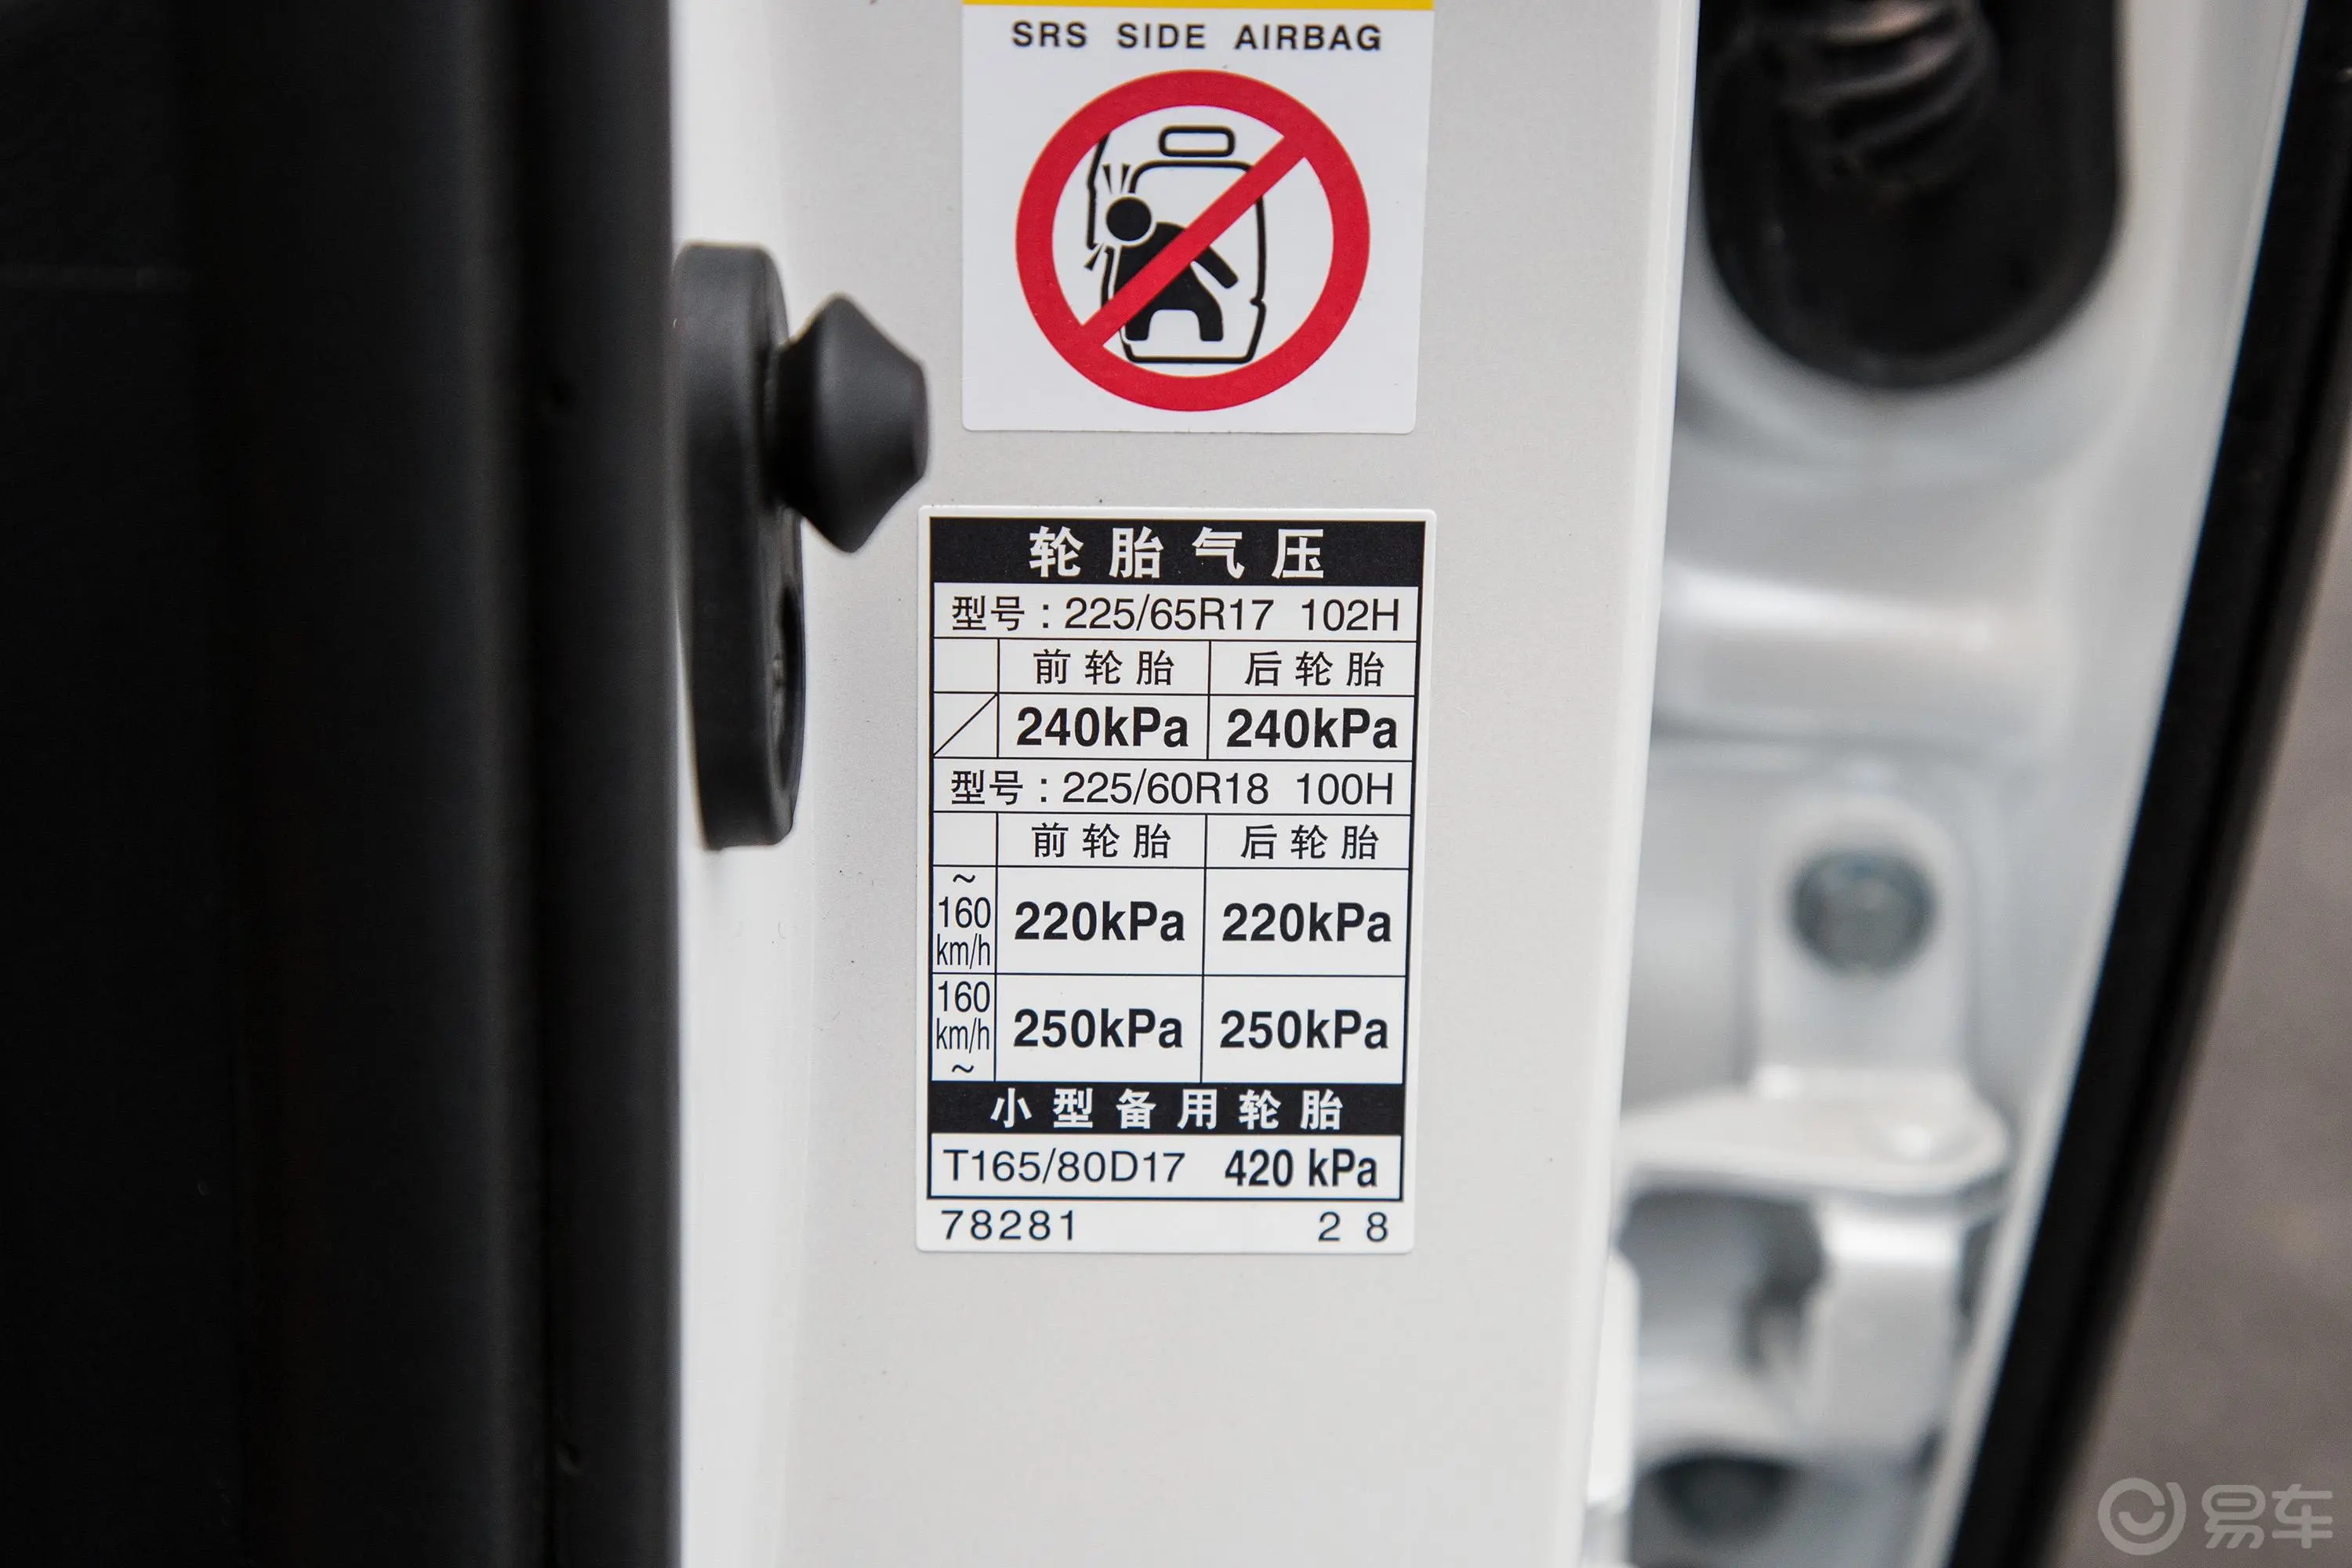 雷克萨斯NXNX 300 锋行版胎压信息铭牌